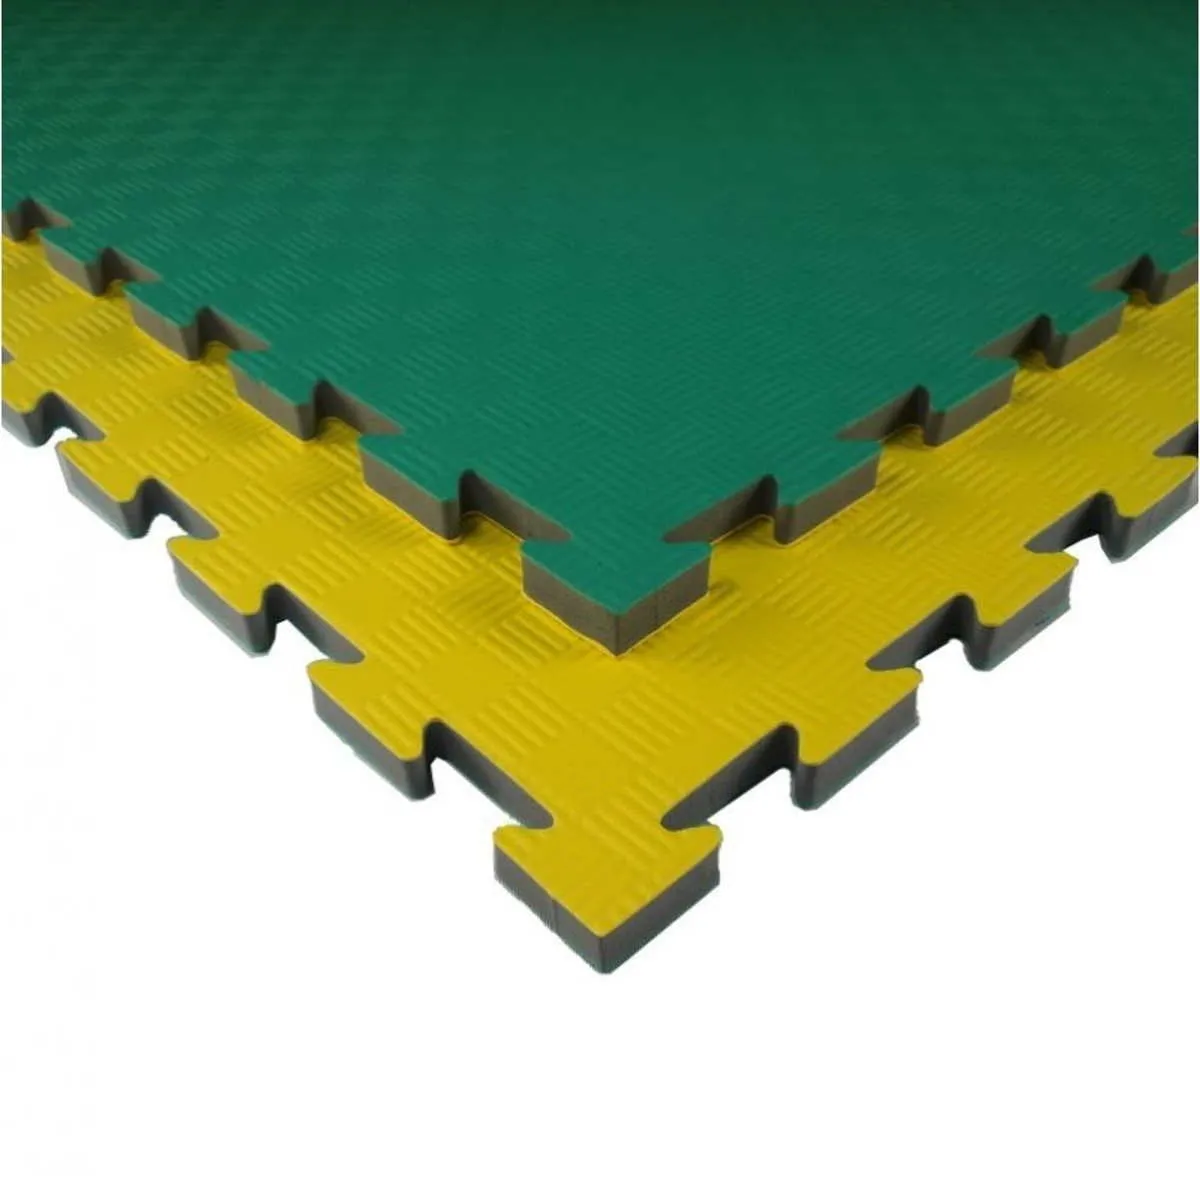 Matte Kampfsportmatte T20X gelb/grün 100 cm x 100 cm x 2,1 cm